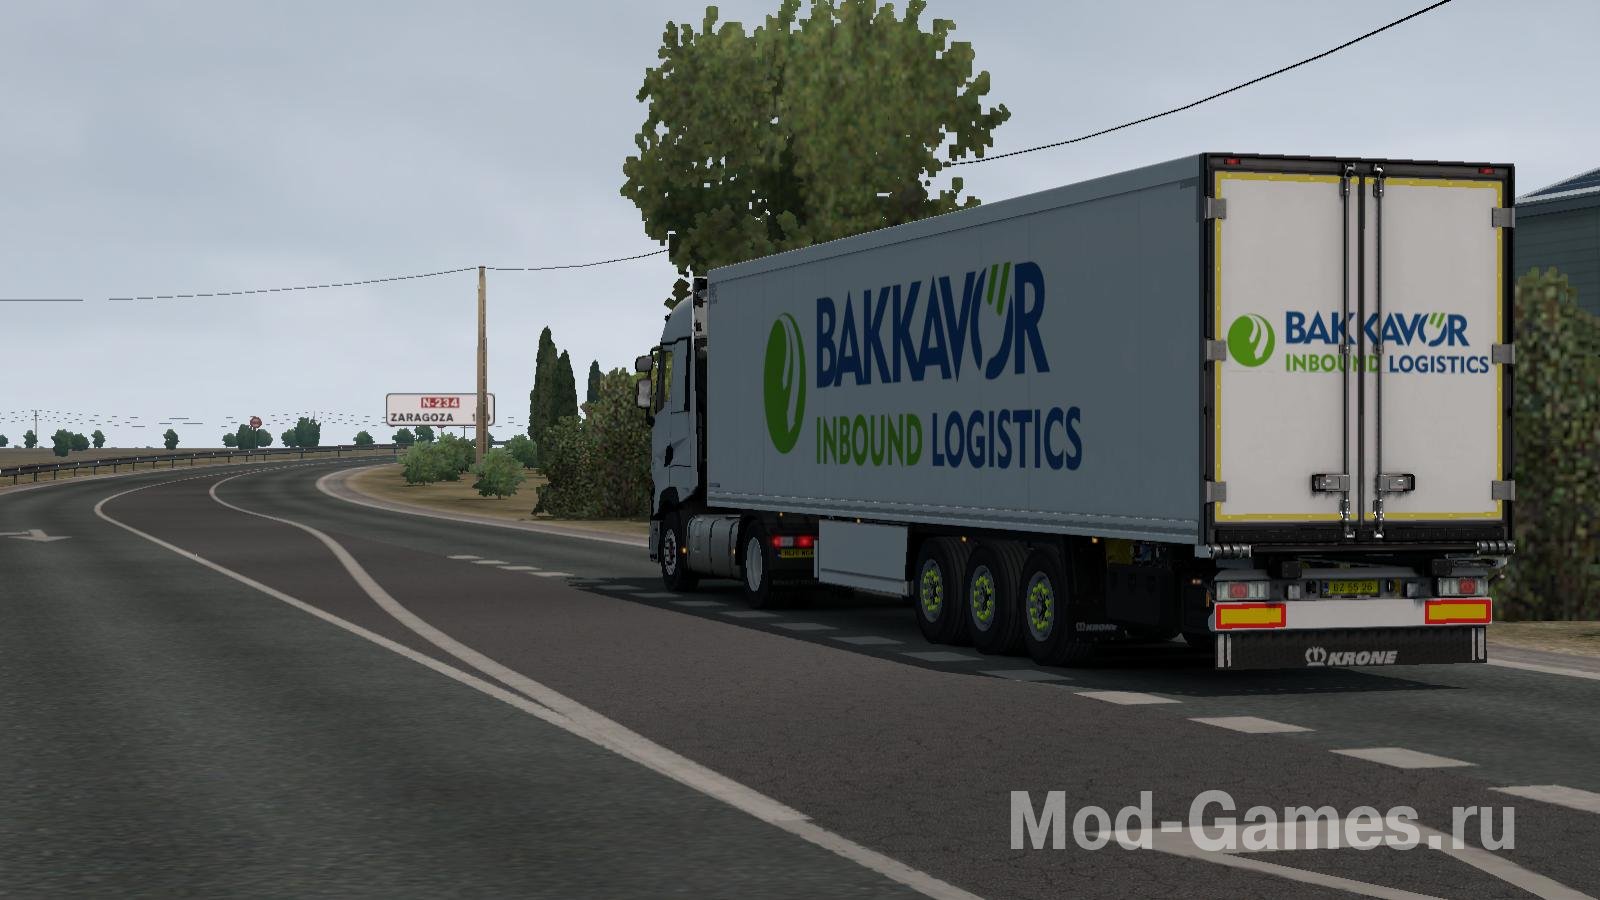 Bakkavor Inbound Logistics